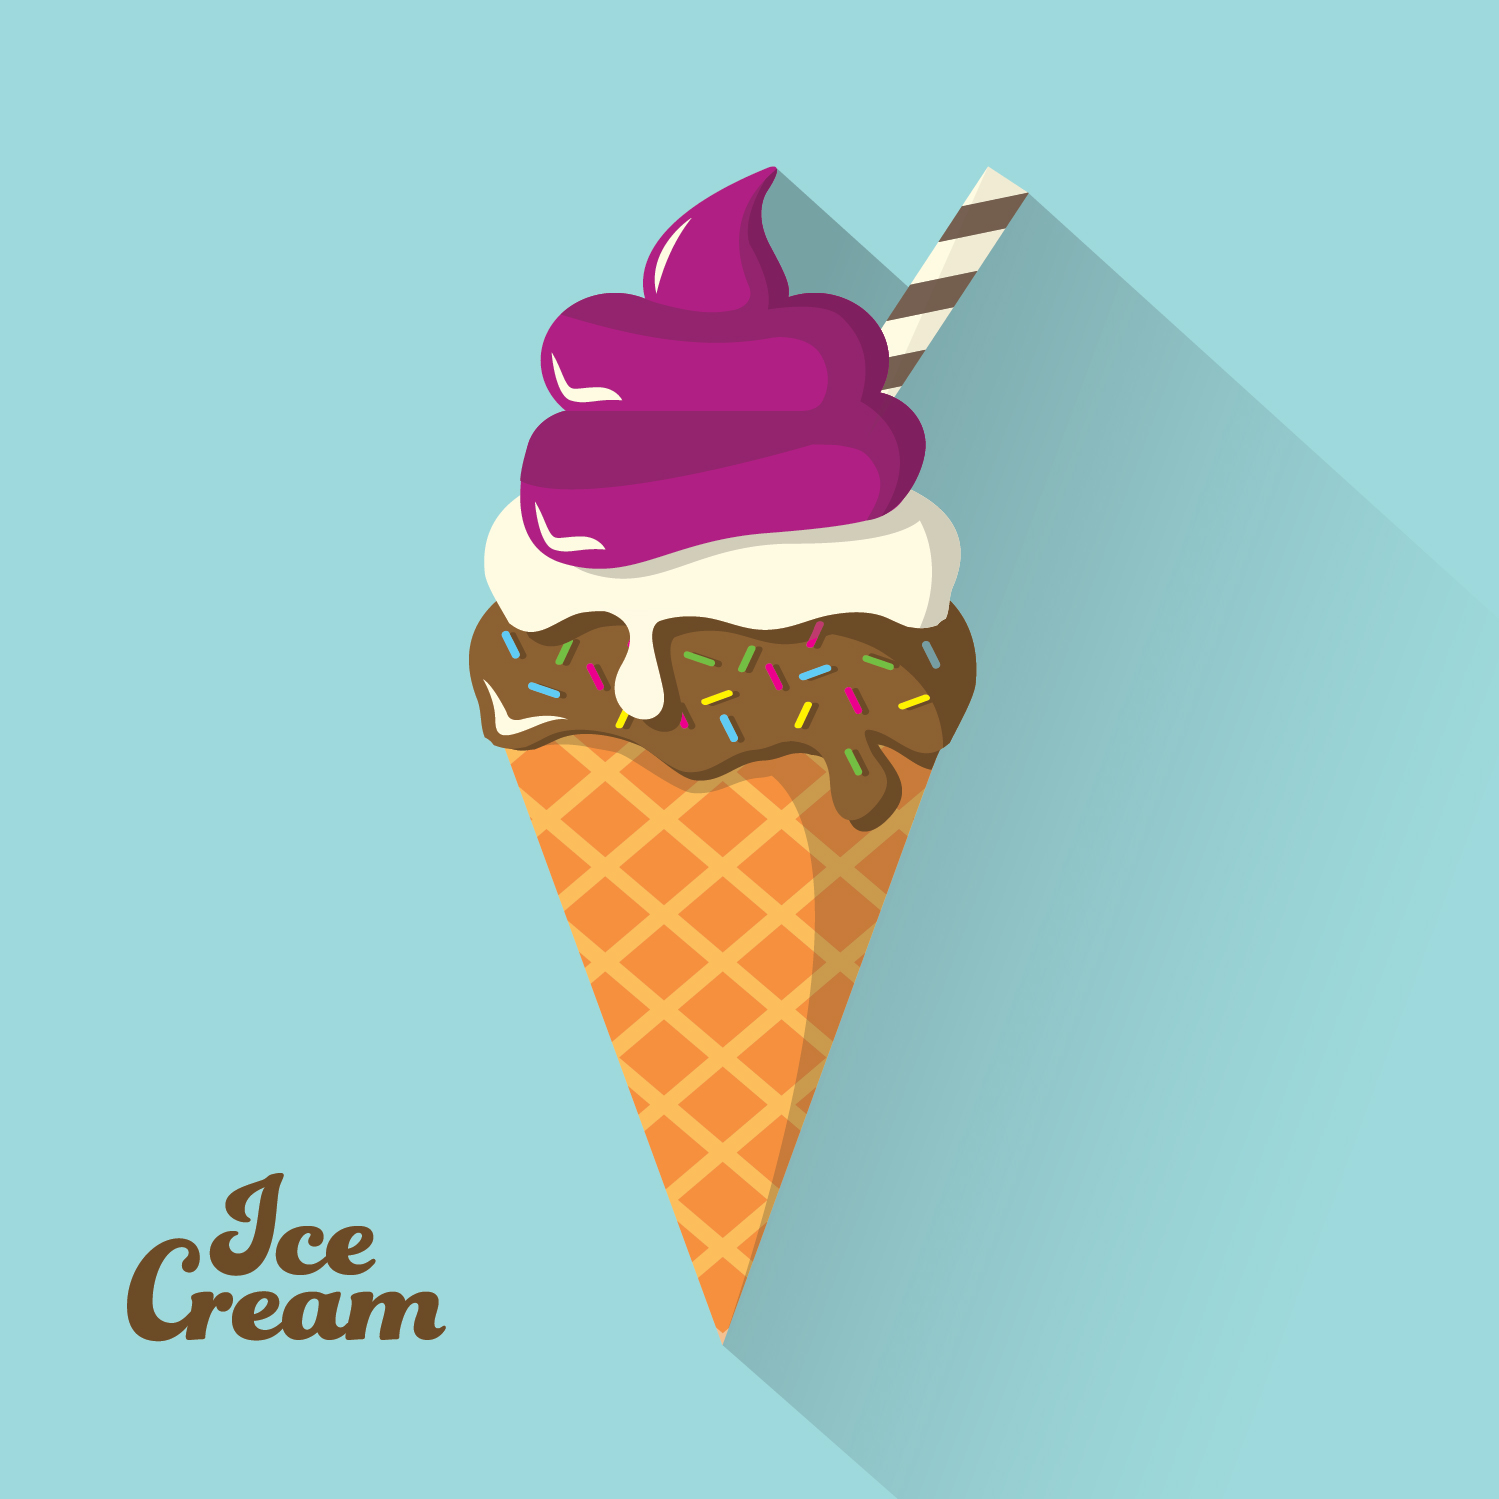 Ice Cream Background Photoshop brush